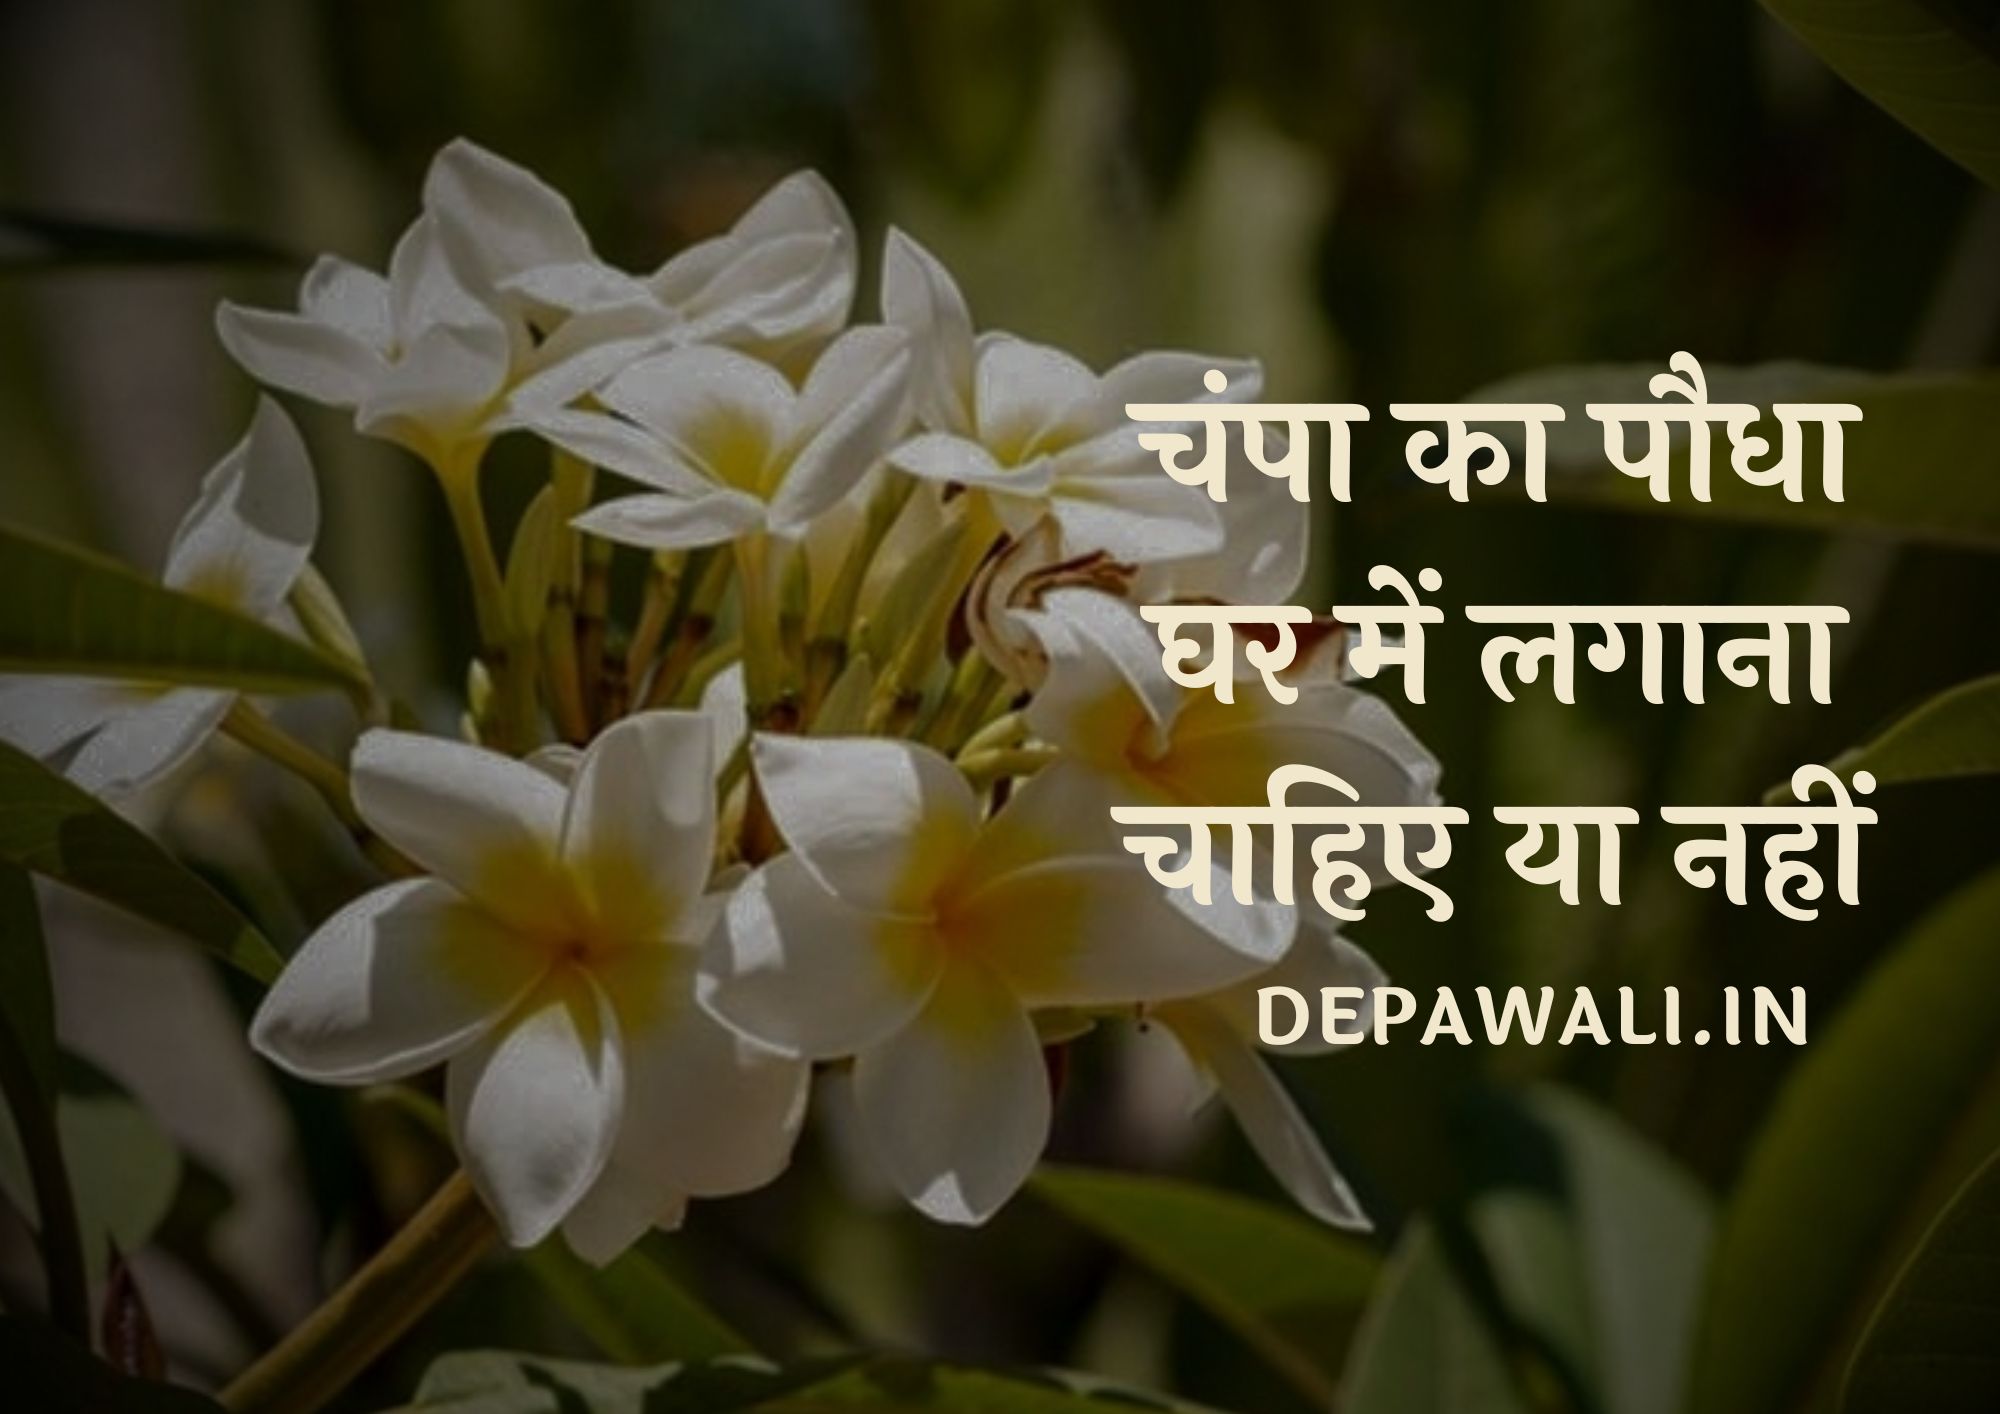 चंपा का पौधा घर में लगाना चाहिए या नहीं हिंदी में (Champa Ka Paudha Ghar Mein Lagana Chahie Ya Nahin)